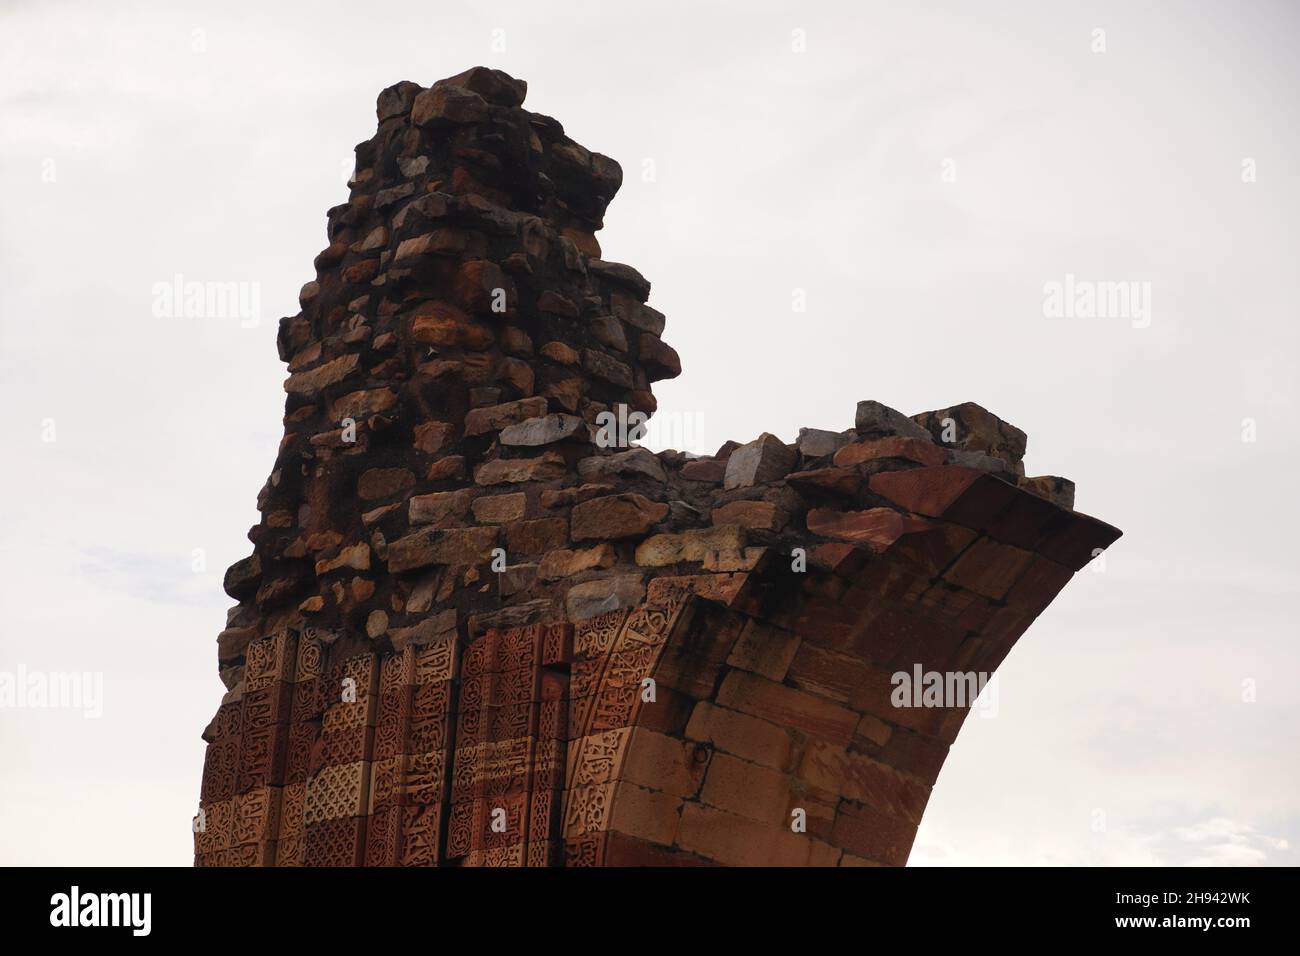 imagen de la antigua estructura histórica india al aire libre Foto de stock